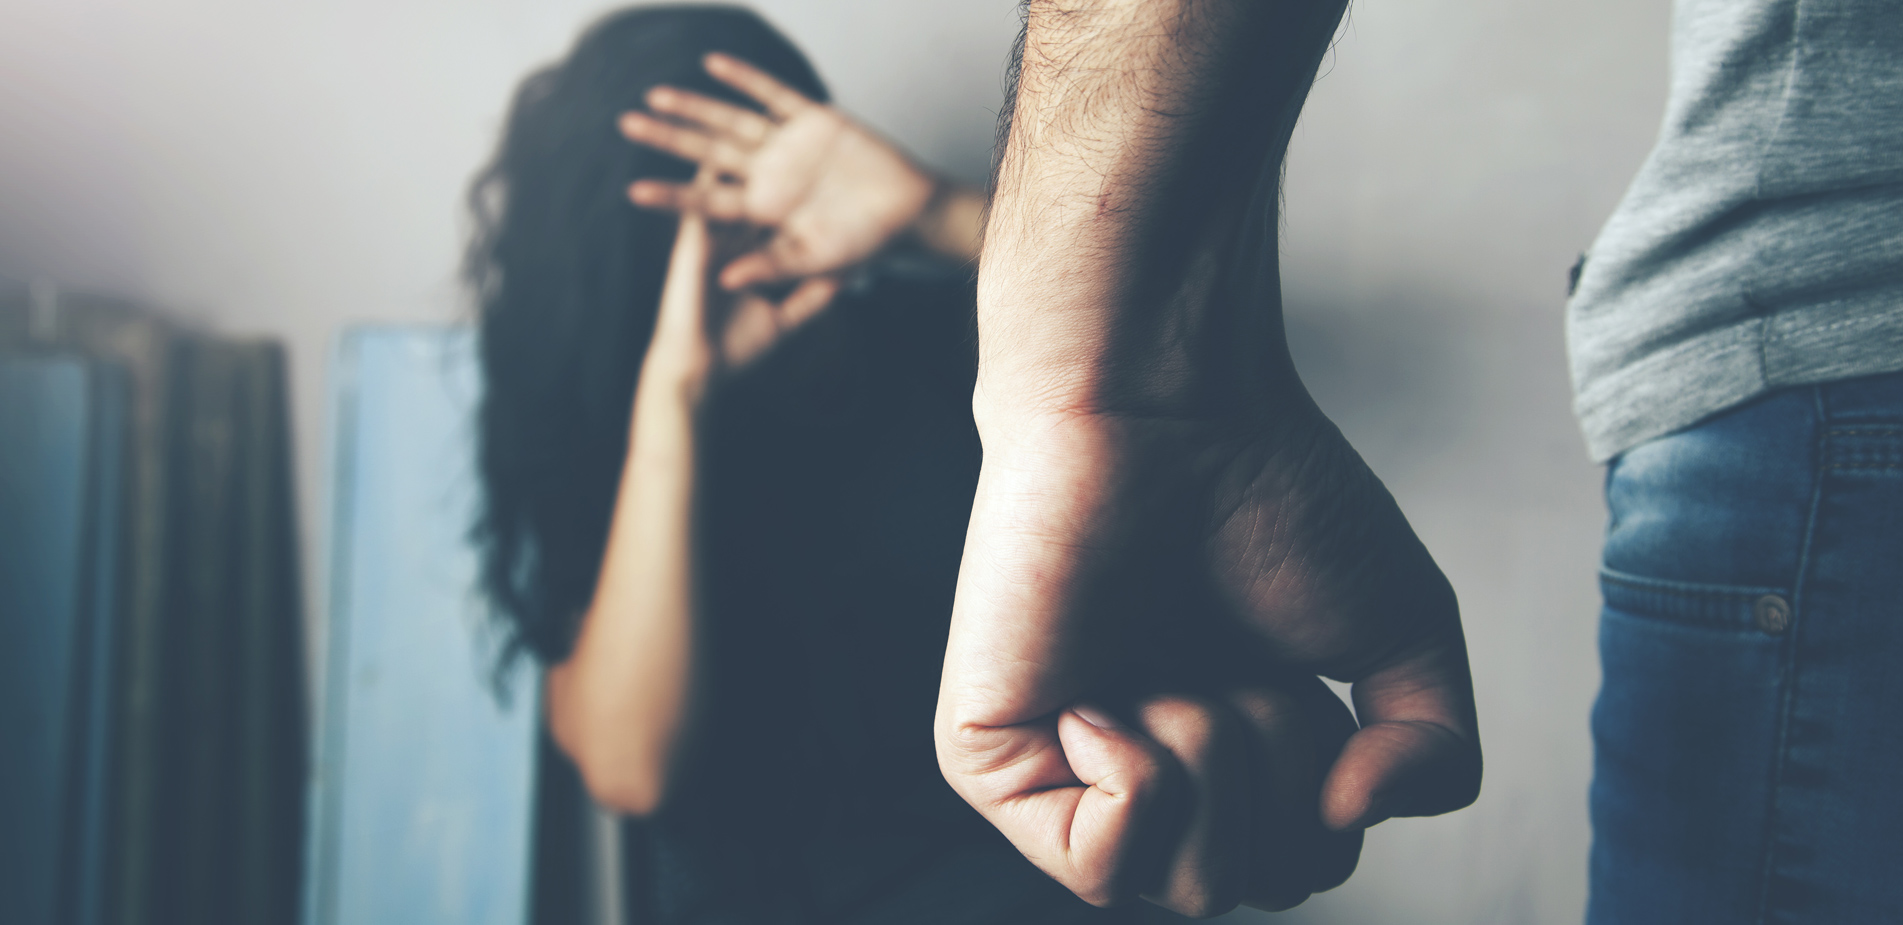 Αίγιο: Σύλληψη μεθυσμένου 45χρονου για ενδοοικογενειακή βία – Η γυναίκα και τα παιδιά τους κλειδώθηκαν σε δωμάτιο